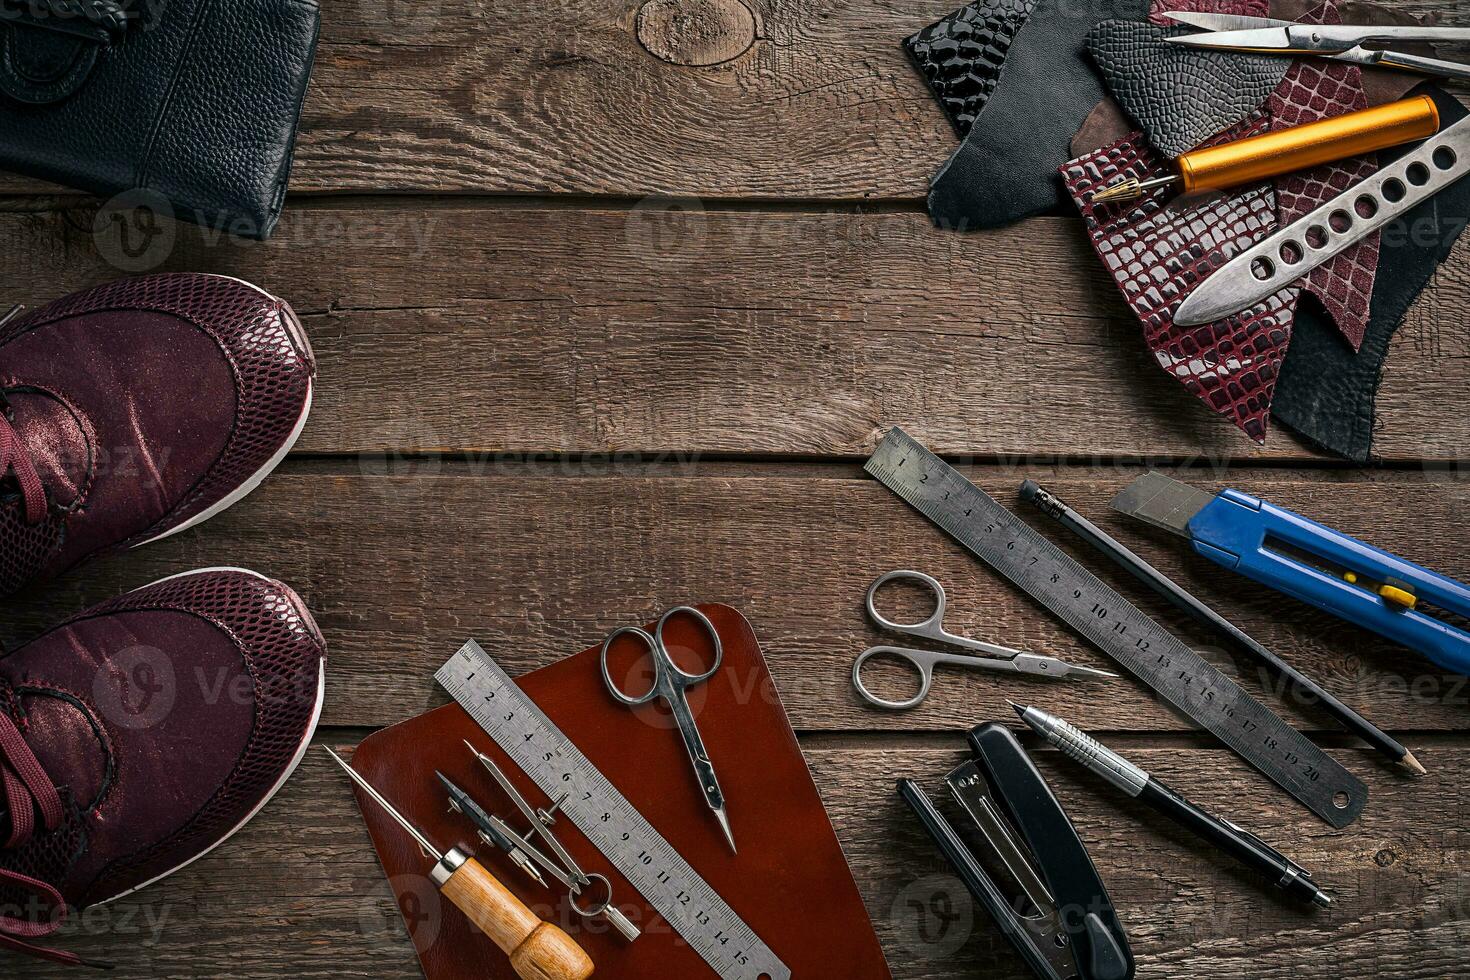 läder hantverk eller läder arbetssätt. läder arbetssätt verktyg och skära ut bitar av läder på arbete skrivbord . foto